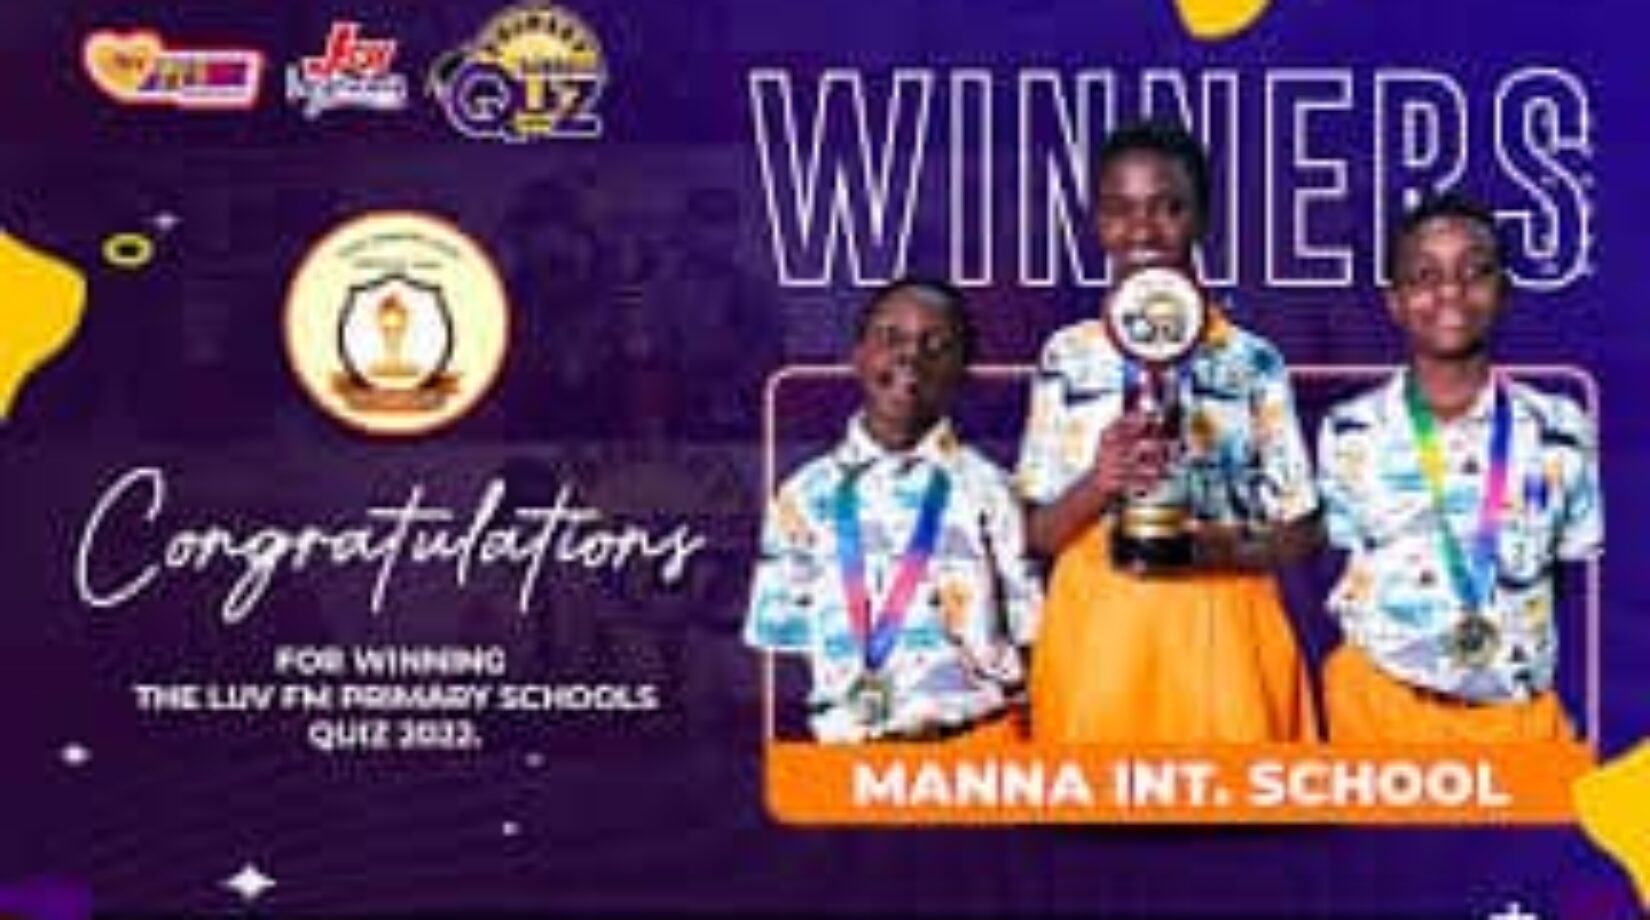 Manna International School Adjudged Best Basic School In Ashanti Region